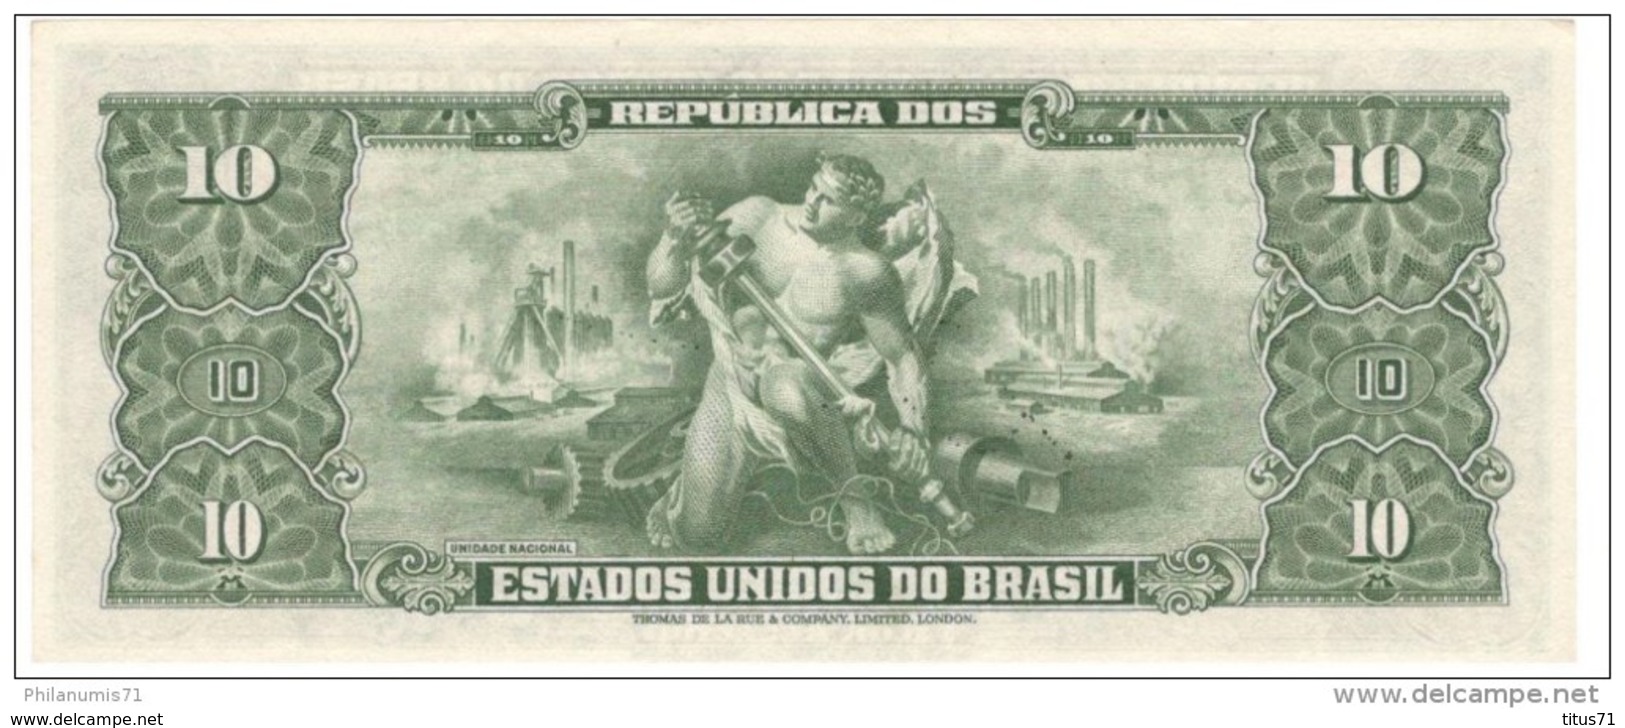 Billet 10 Cruzeiros Brésil / Brasil / Brazil 1950 - Signé / Autografada - FE - XF - Neuf - Amato C 075 - Brésil